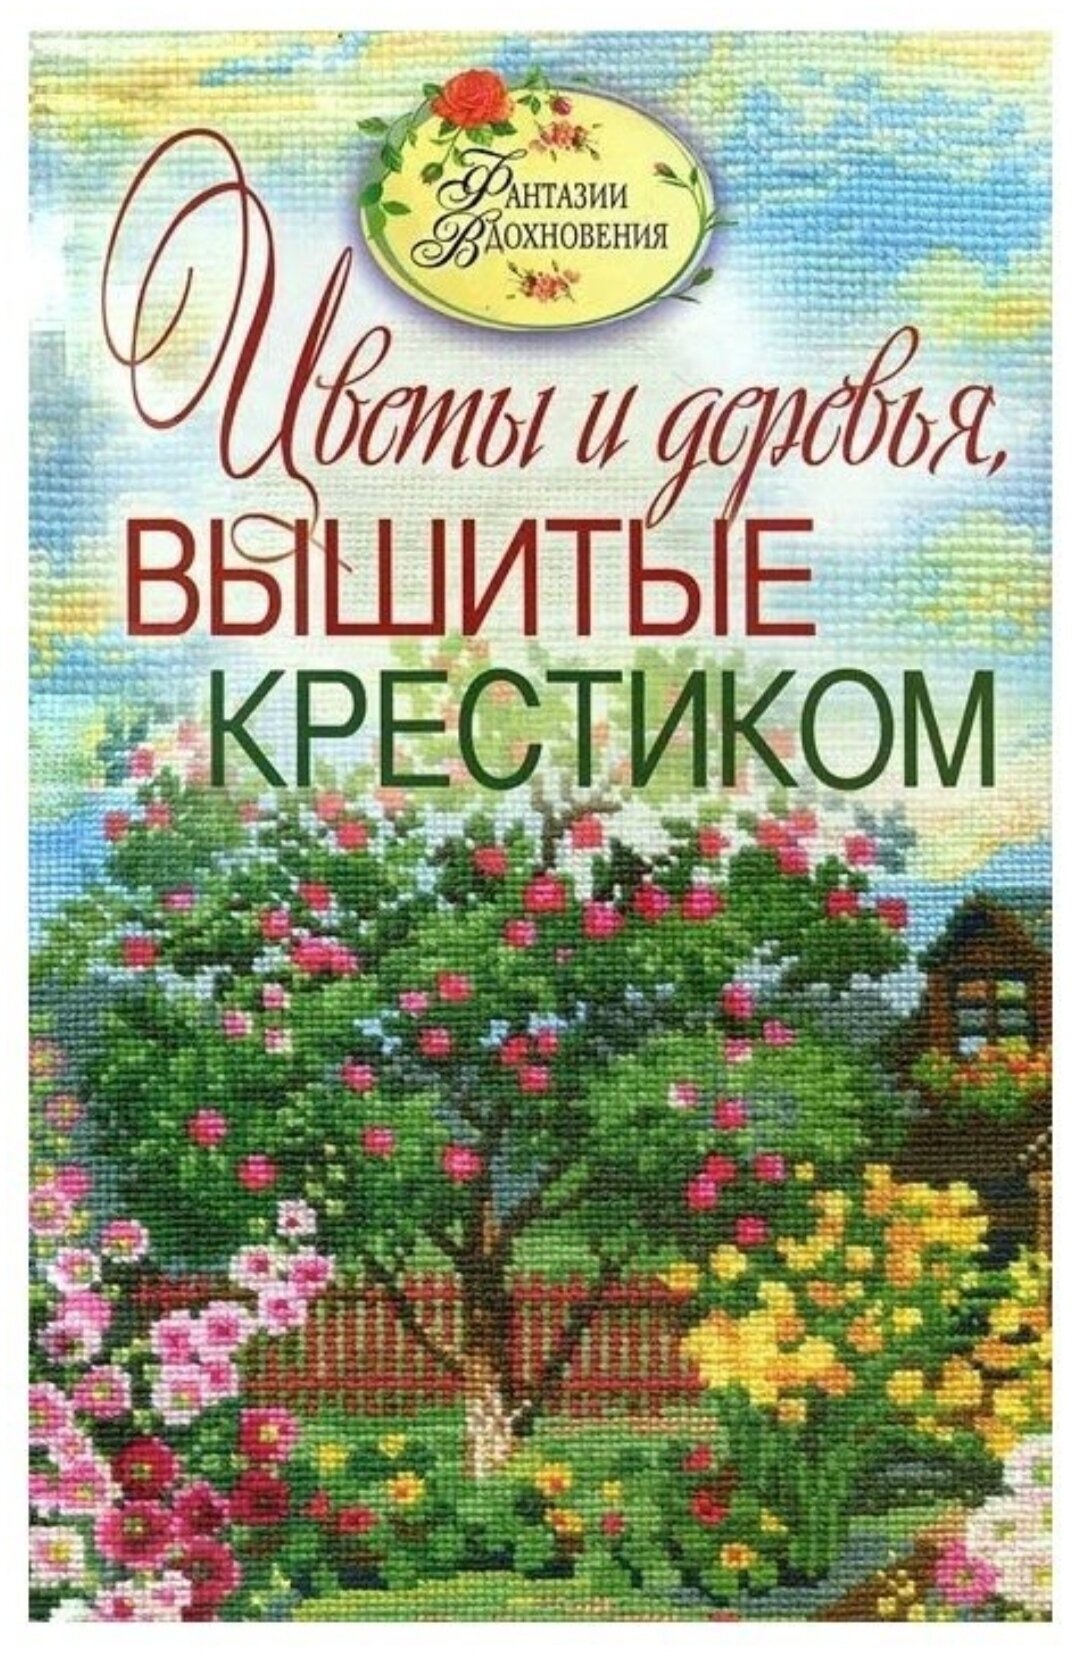 Ращупкина Светлана Юрьевна "Цветы и деревья, вышитые крестиком"